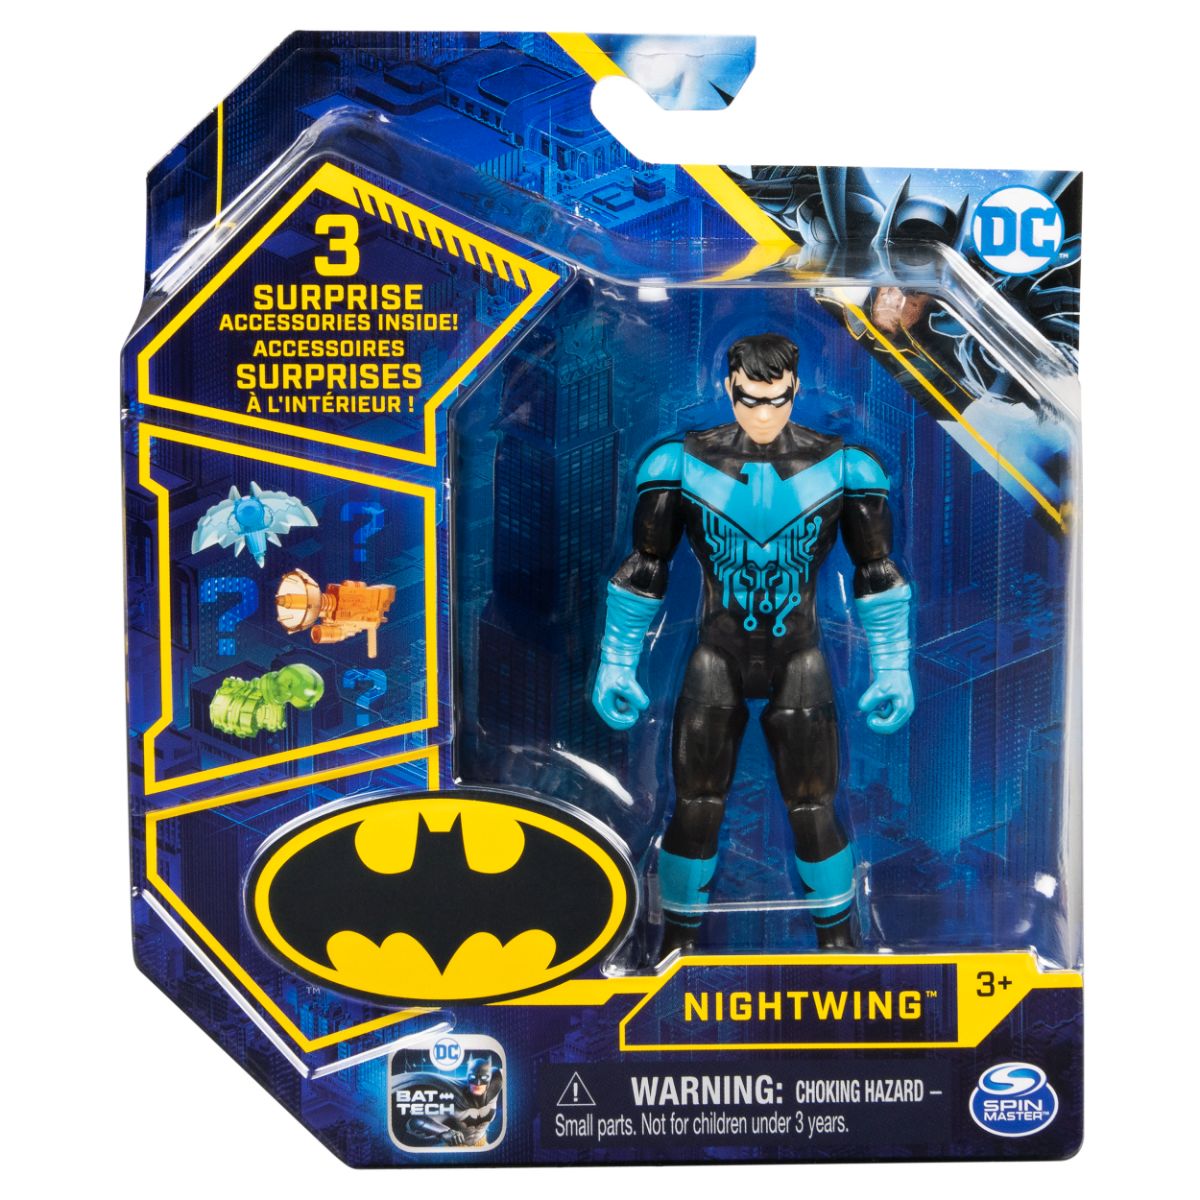 Set Figurina cu accesorii surpriza Batman, Nightwing 20131337 Batman